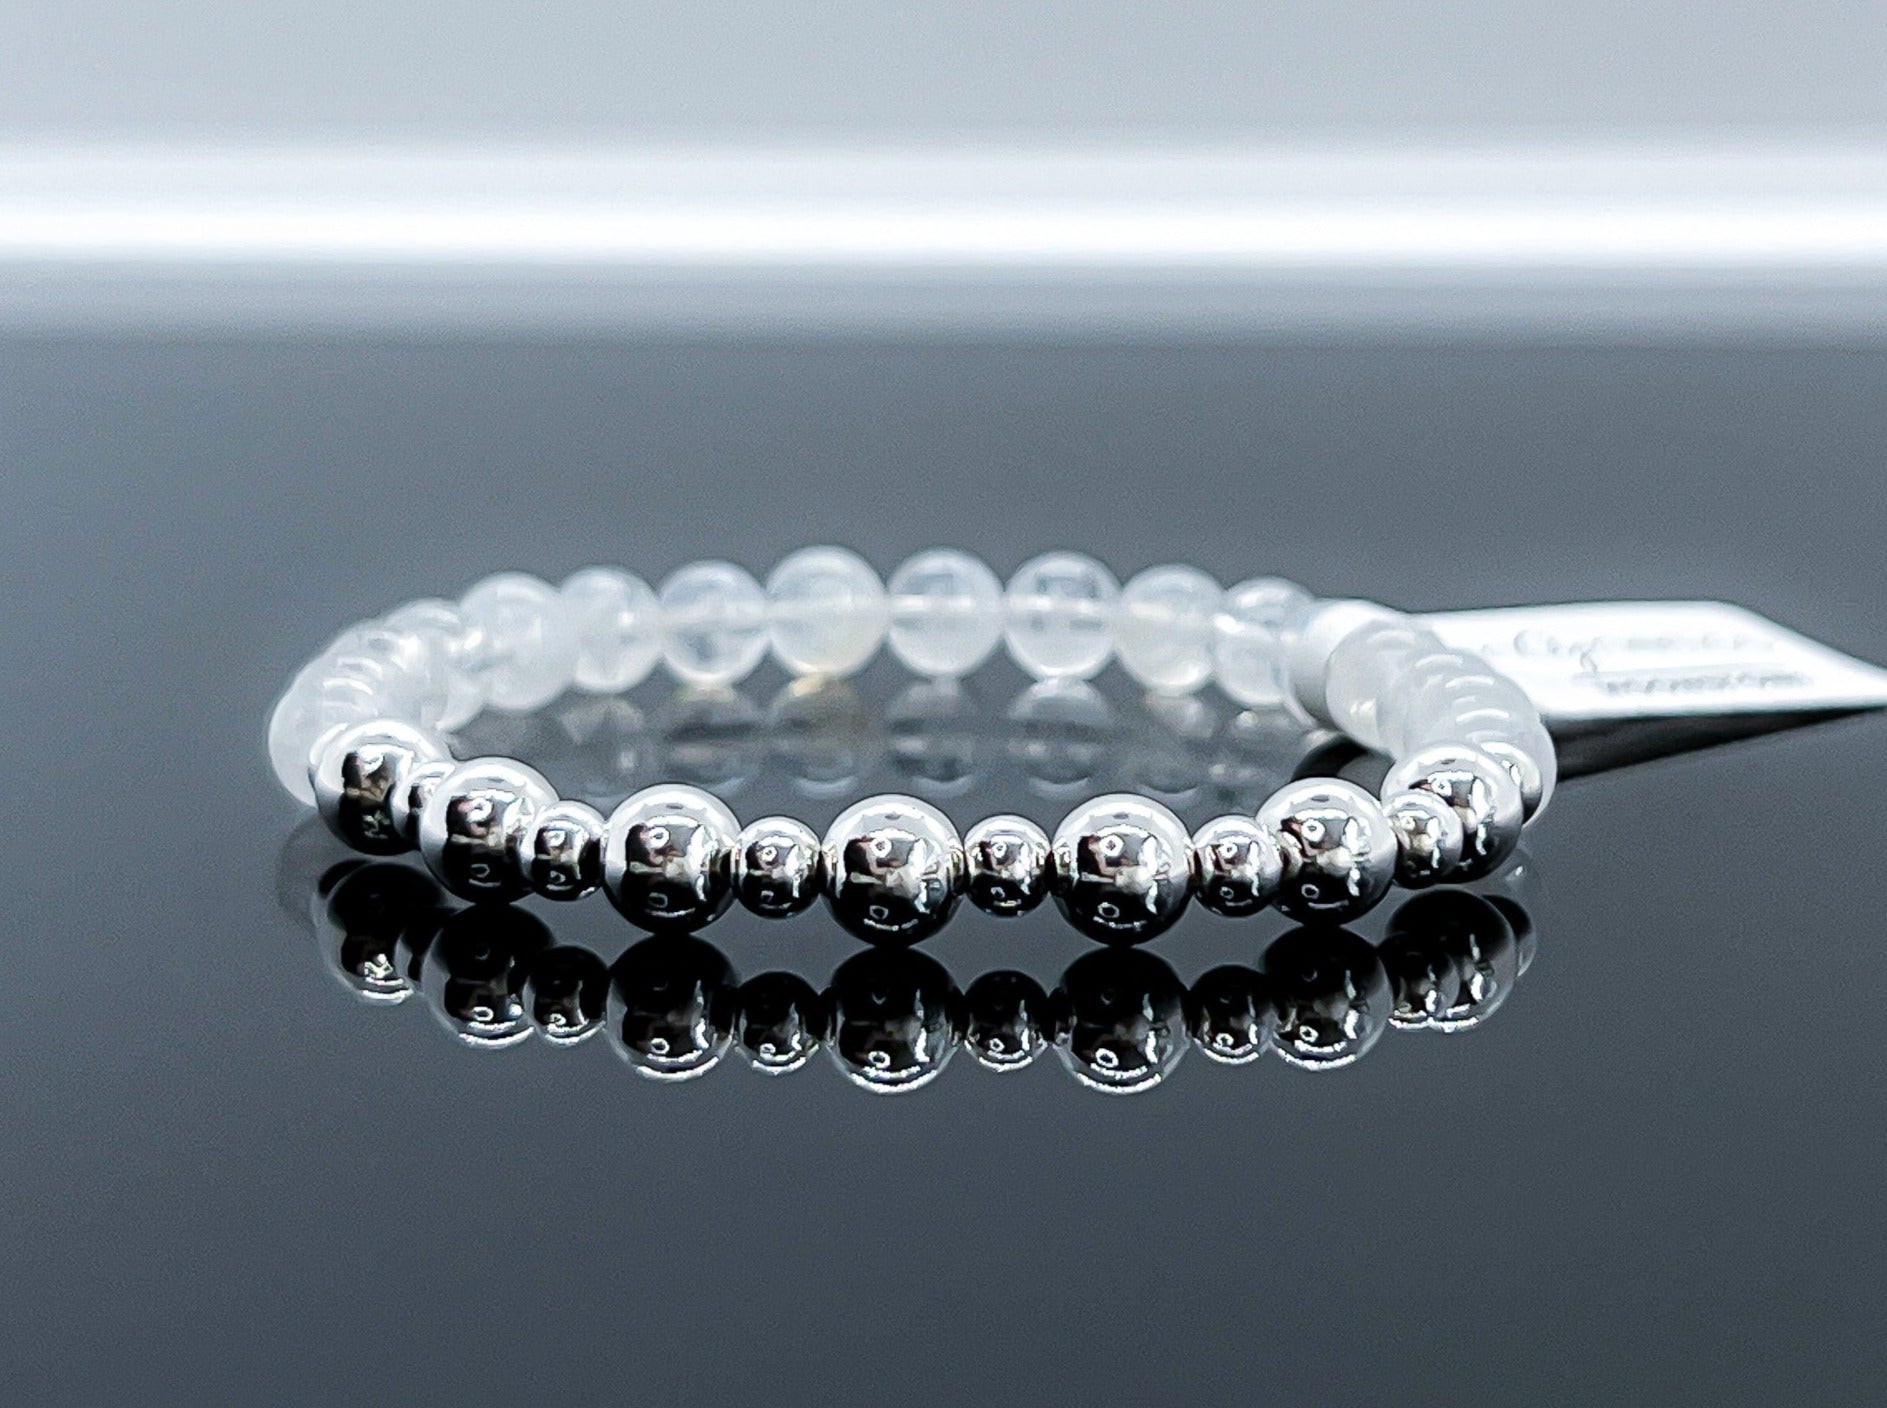 Natural Blue Light Moonstone Crystal Clear Round Beads Bracelet Suitable  for Women Men 6mm 7mm 8mm 9mm 10mm (Gem Color : 9mm)